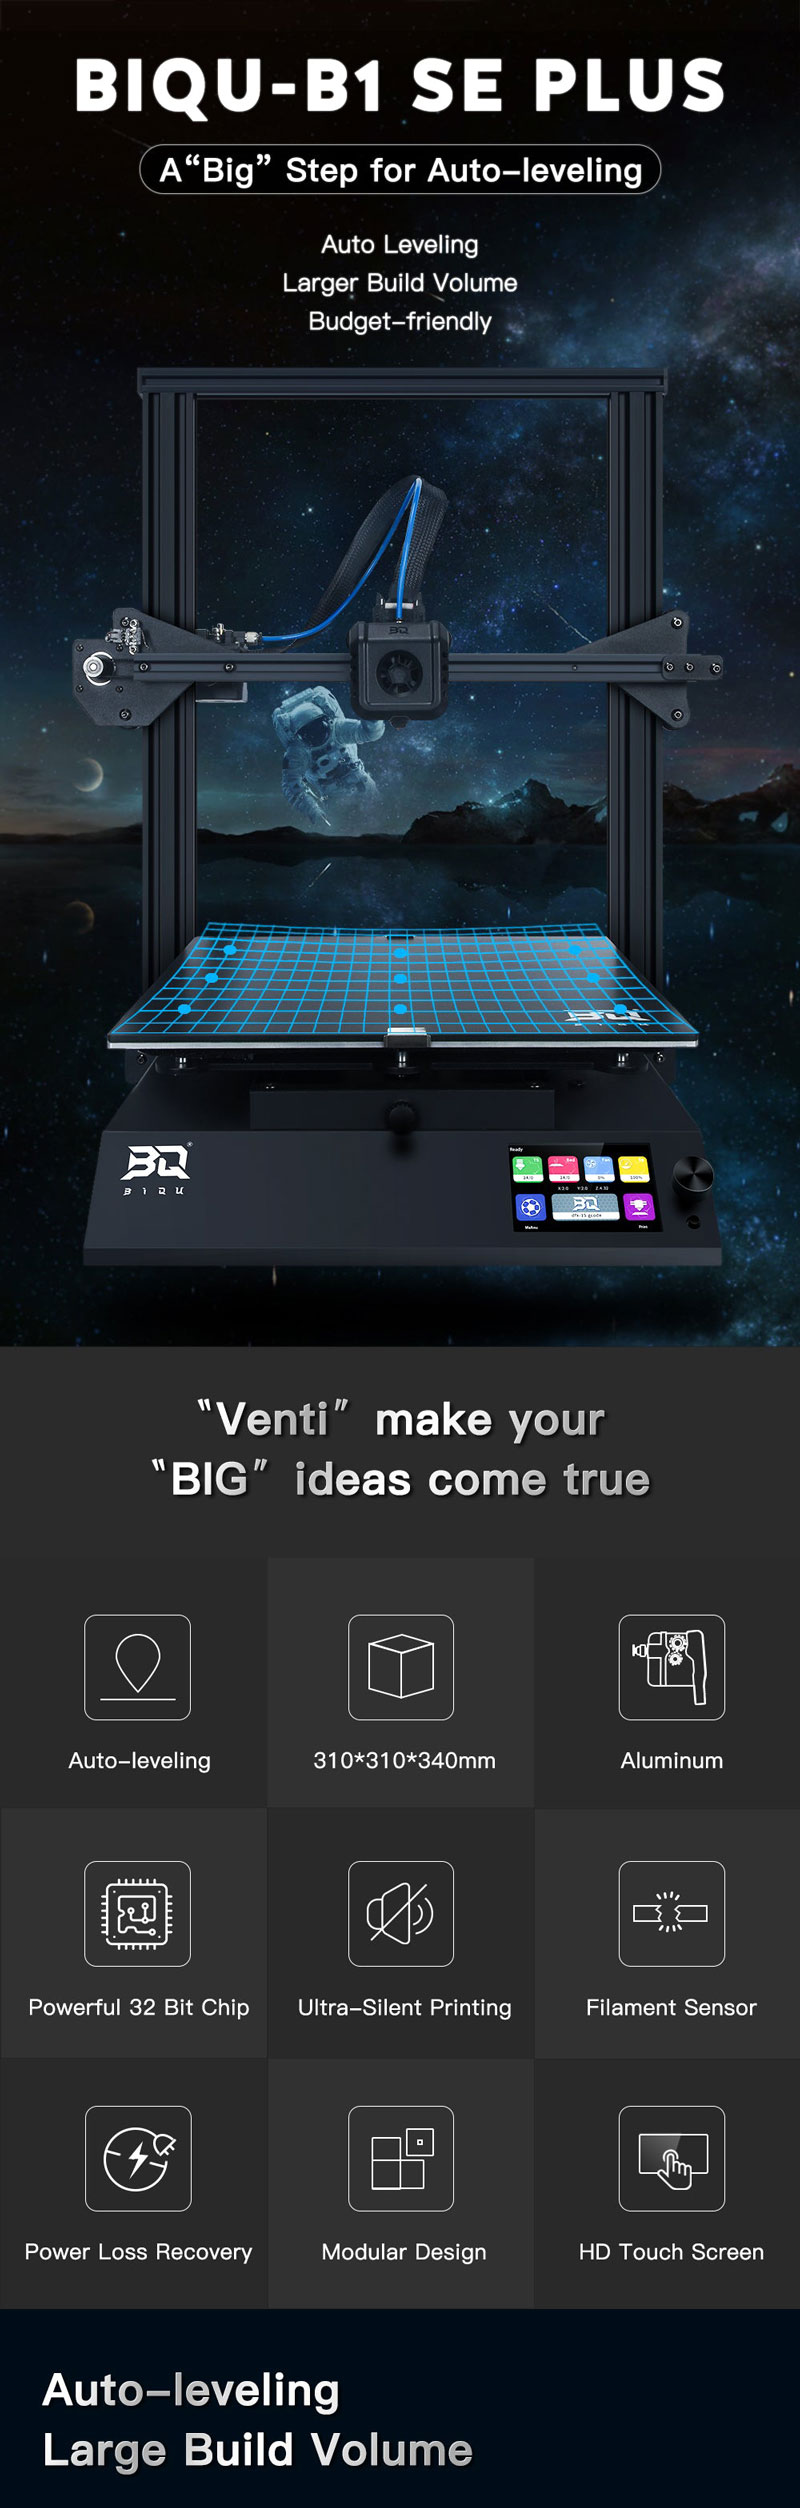 BIQU Bq SE PLUS fdm 3d printer